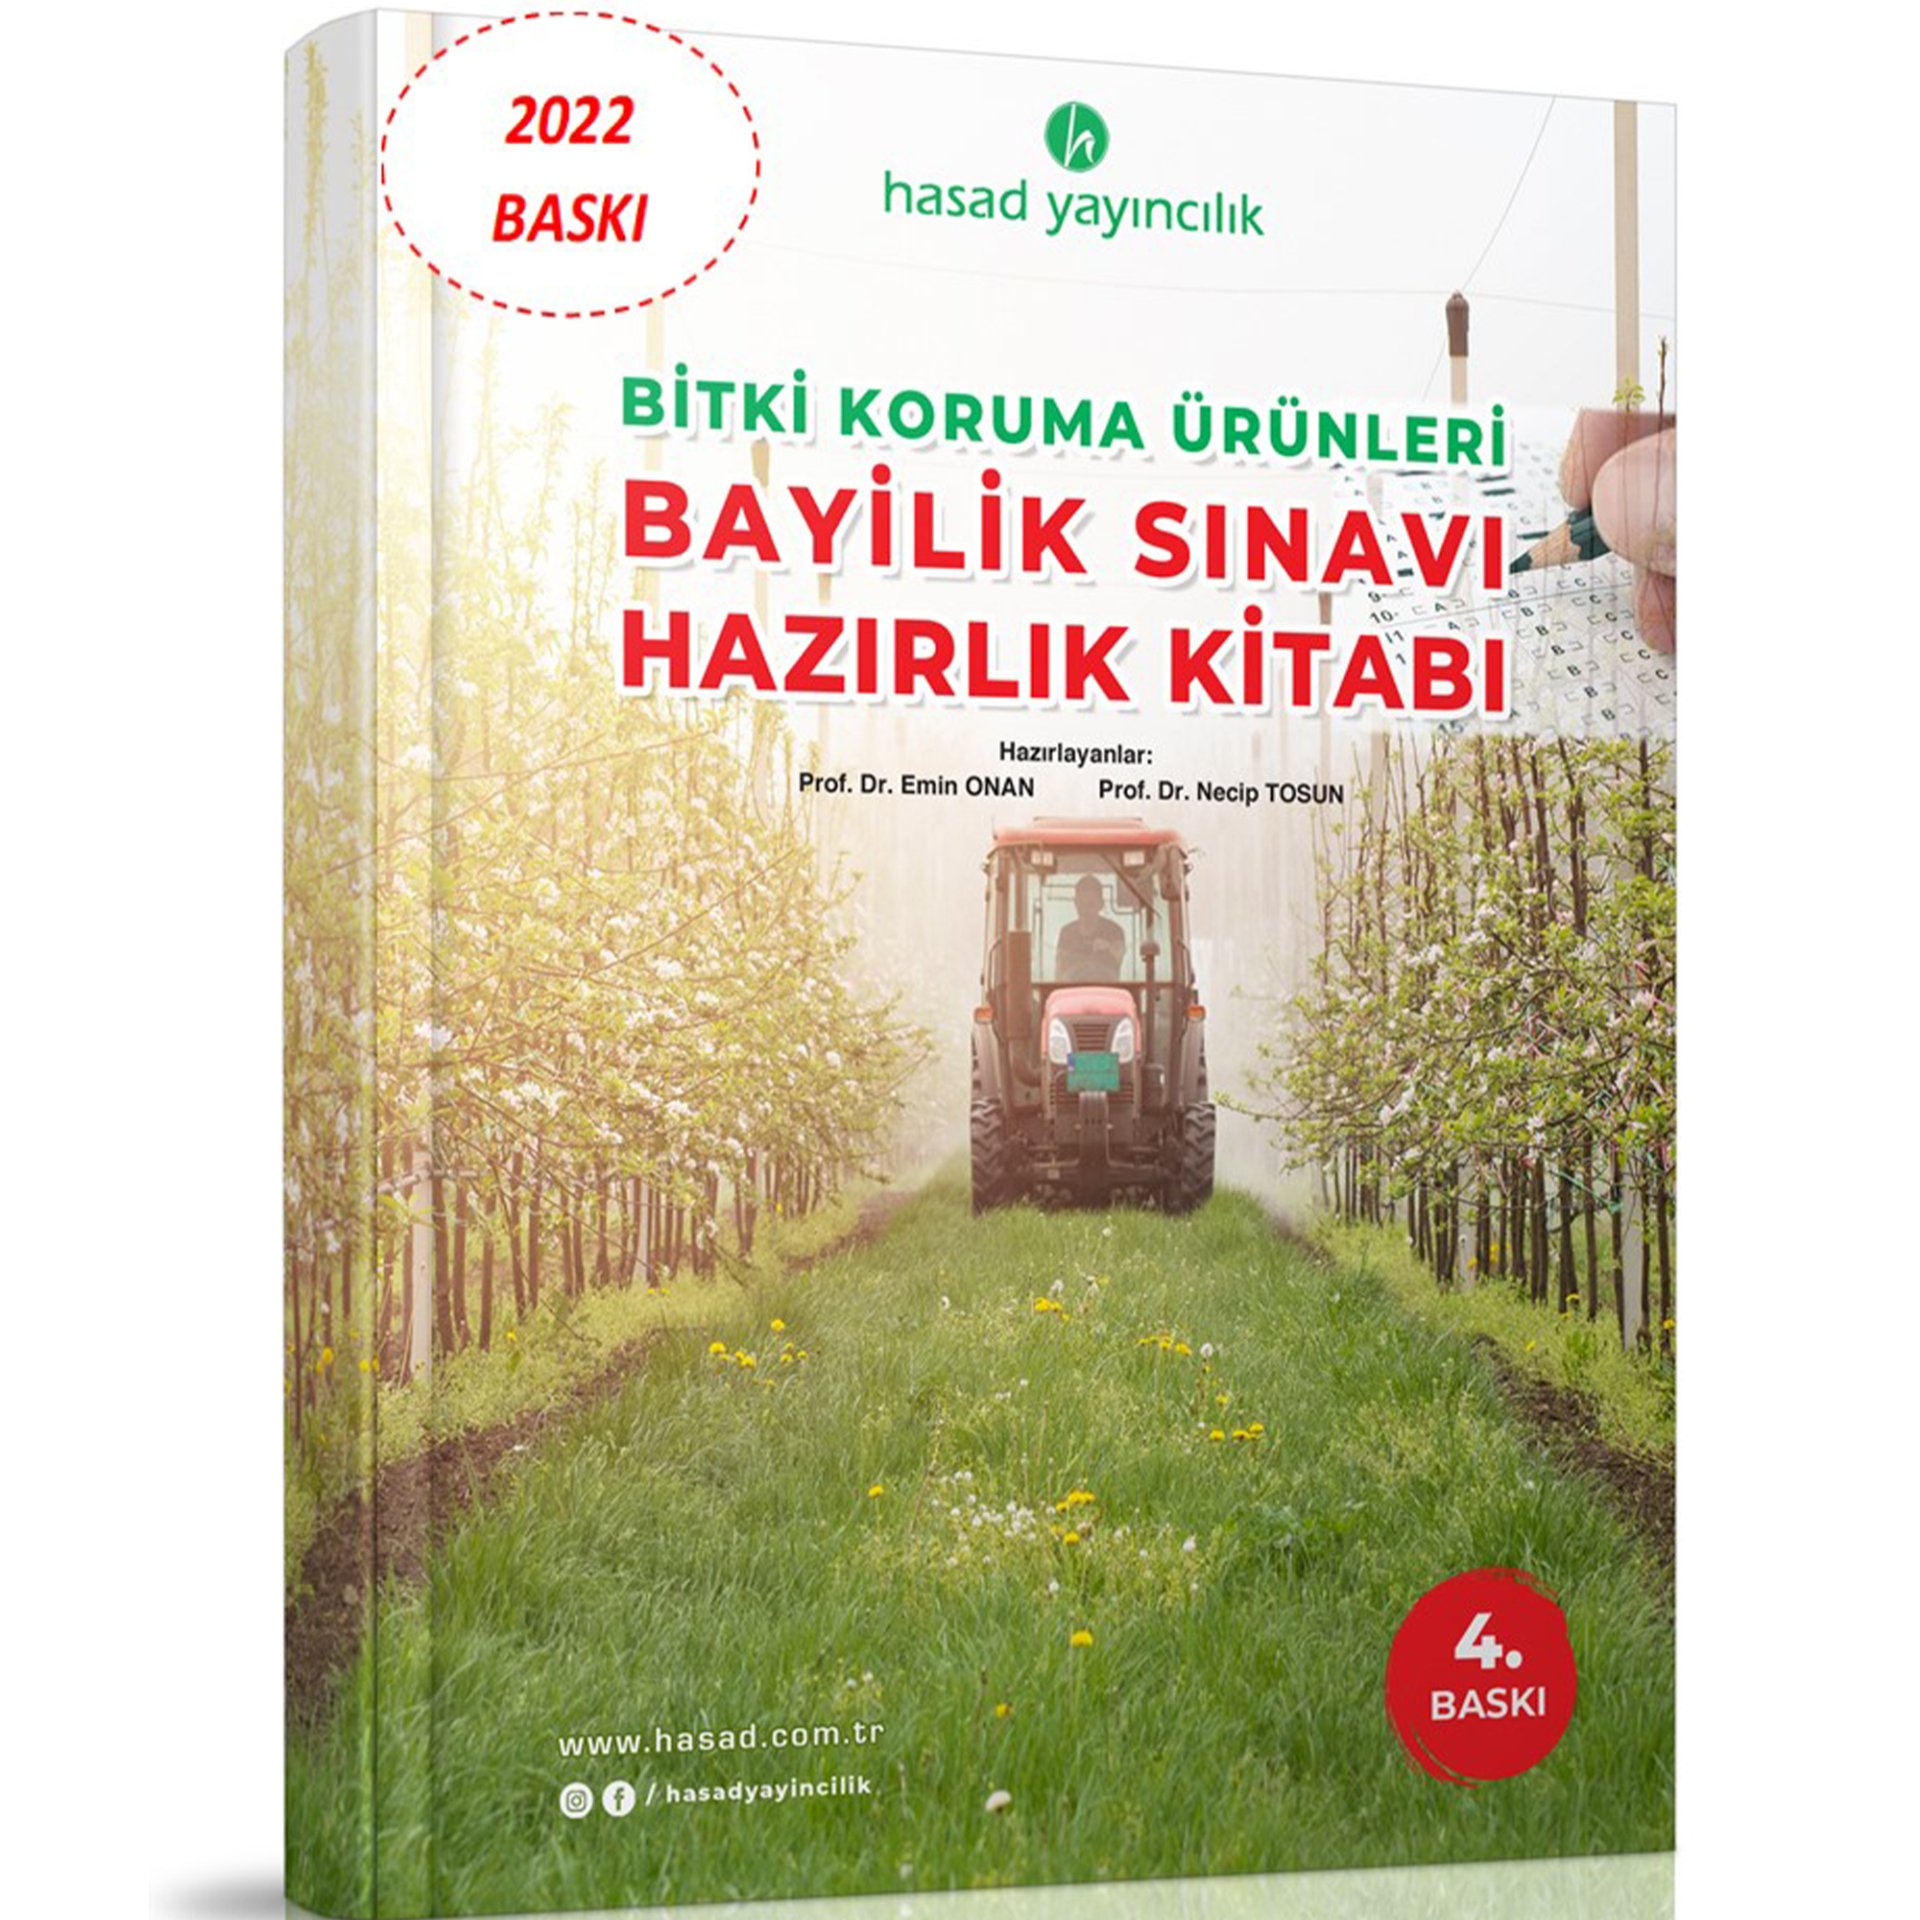 Bitki Koruma Ürünleri Bayilik Sınavı Hazırlık Kitabı (2022 Son Baskı)